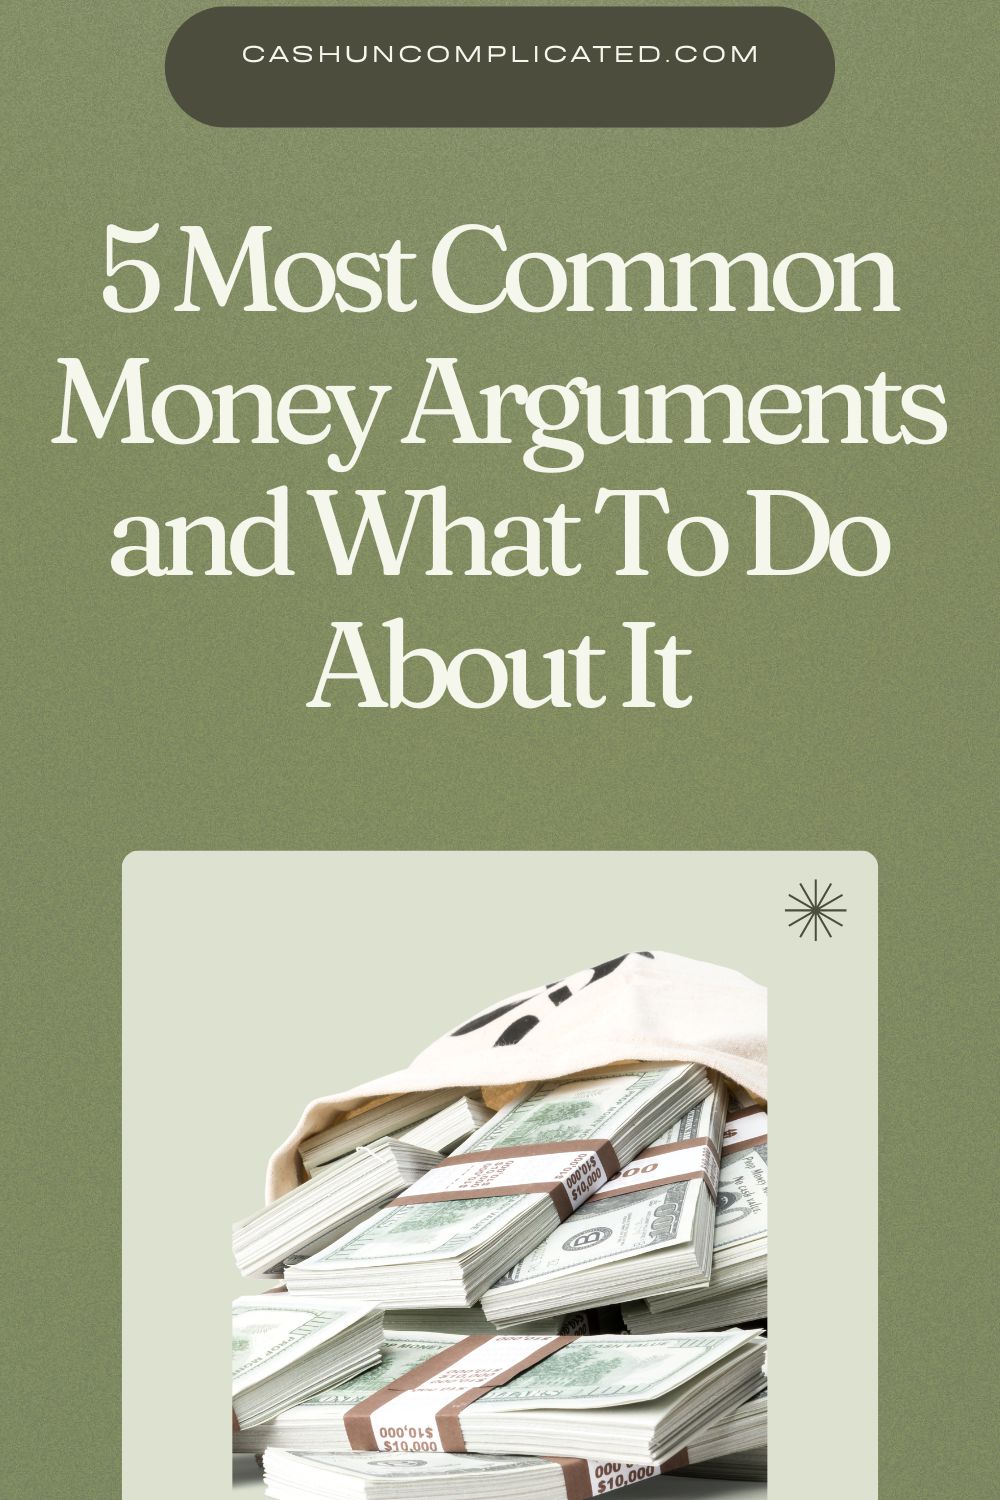 Money arguments